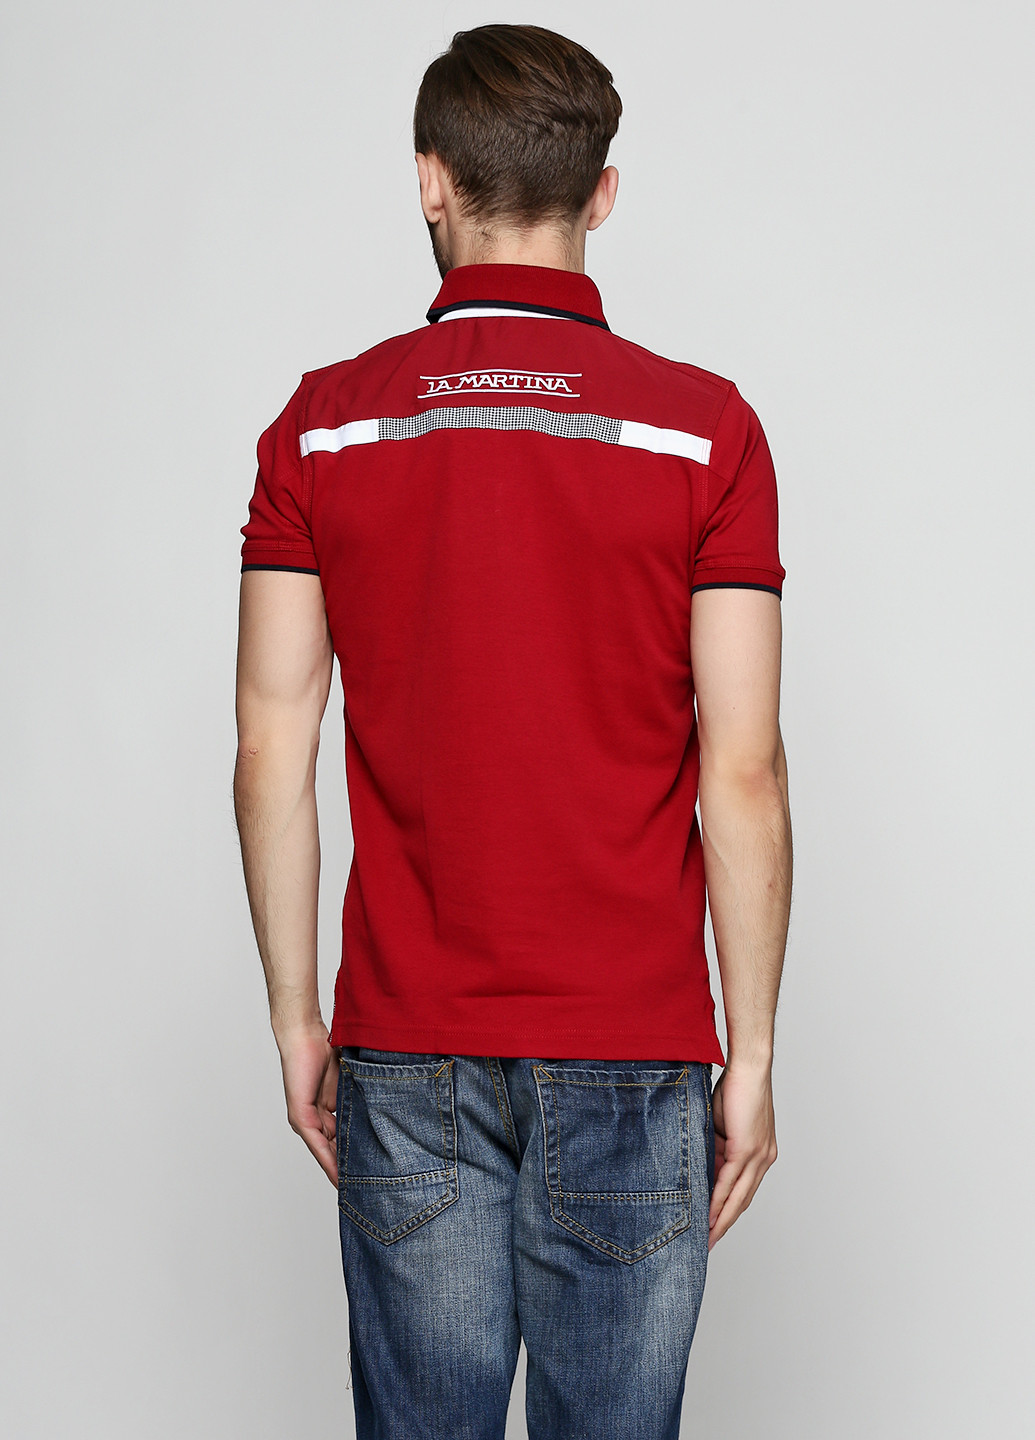 Бордовая футболка-поло для мужчин La Martina с надписью